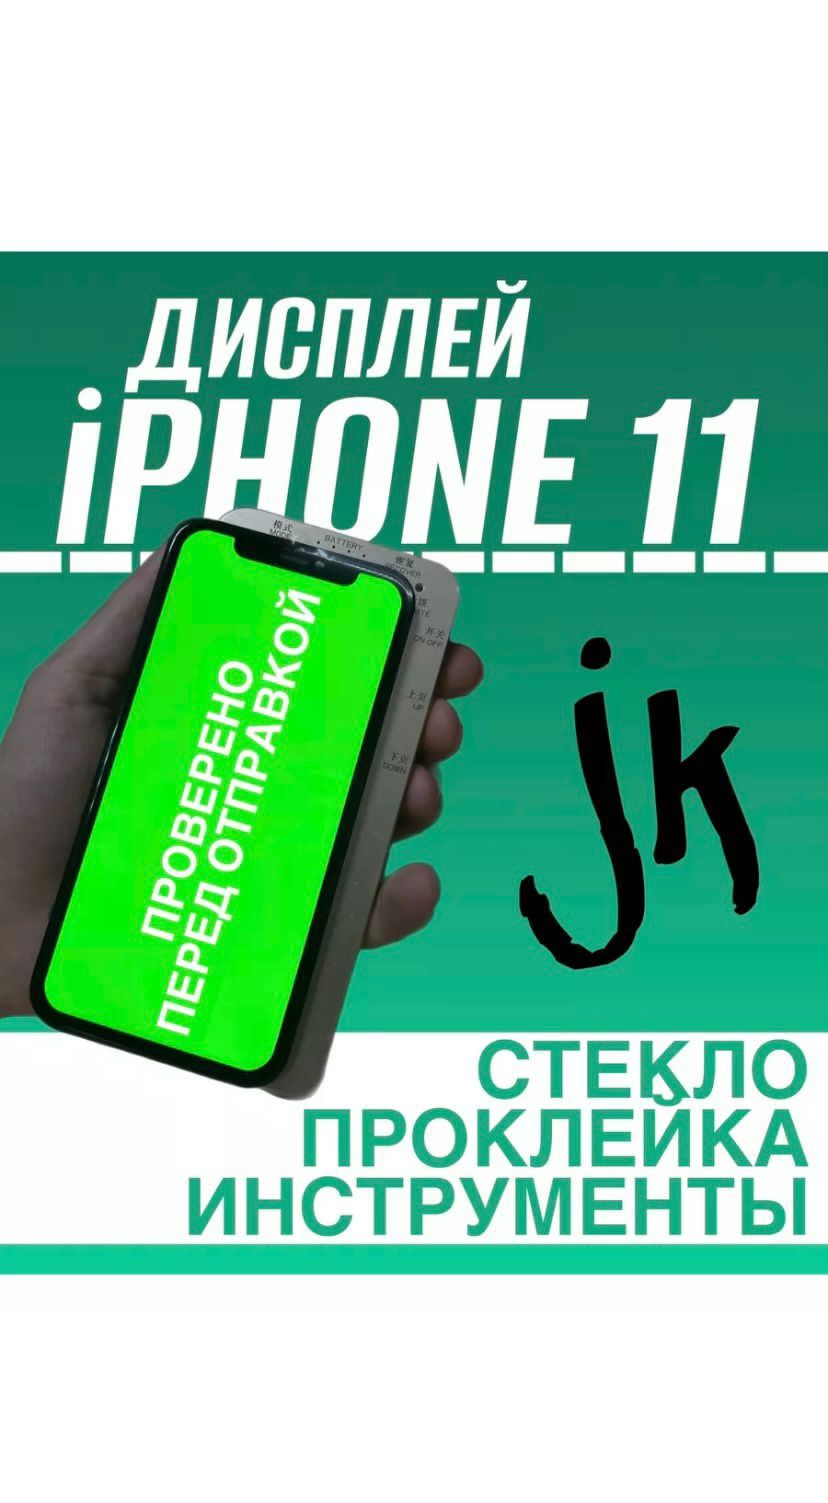 Дисплей iPhone Экран Айфон 7/7+/8/8+/Х/11/PRO MAX